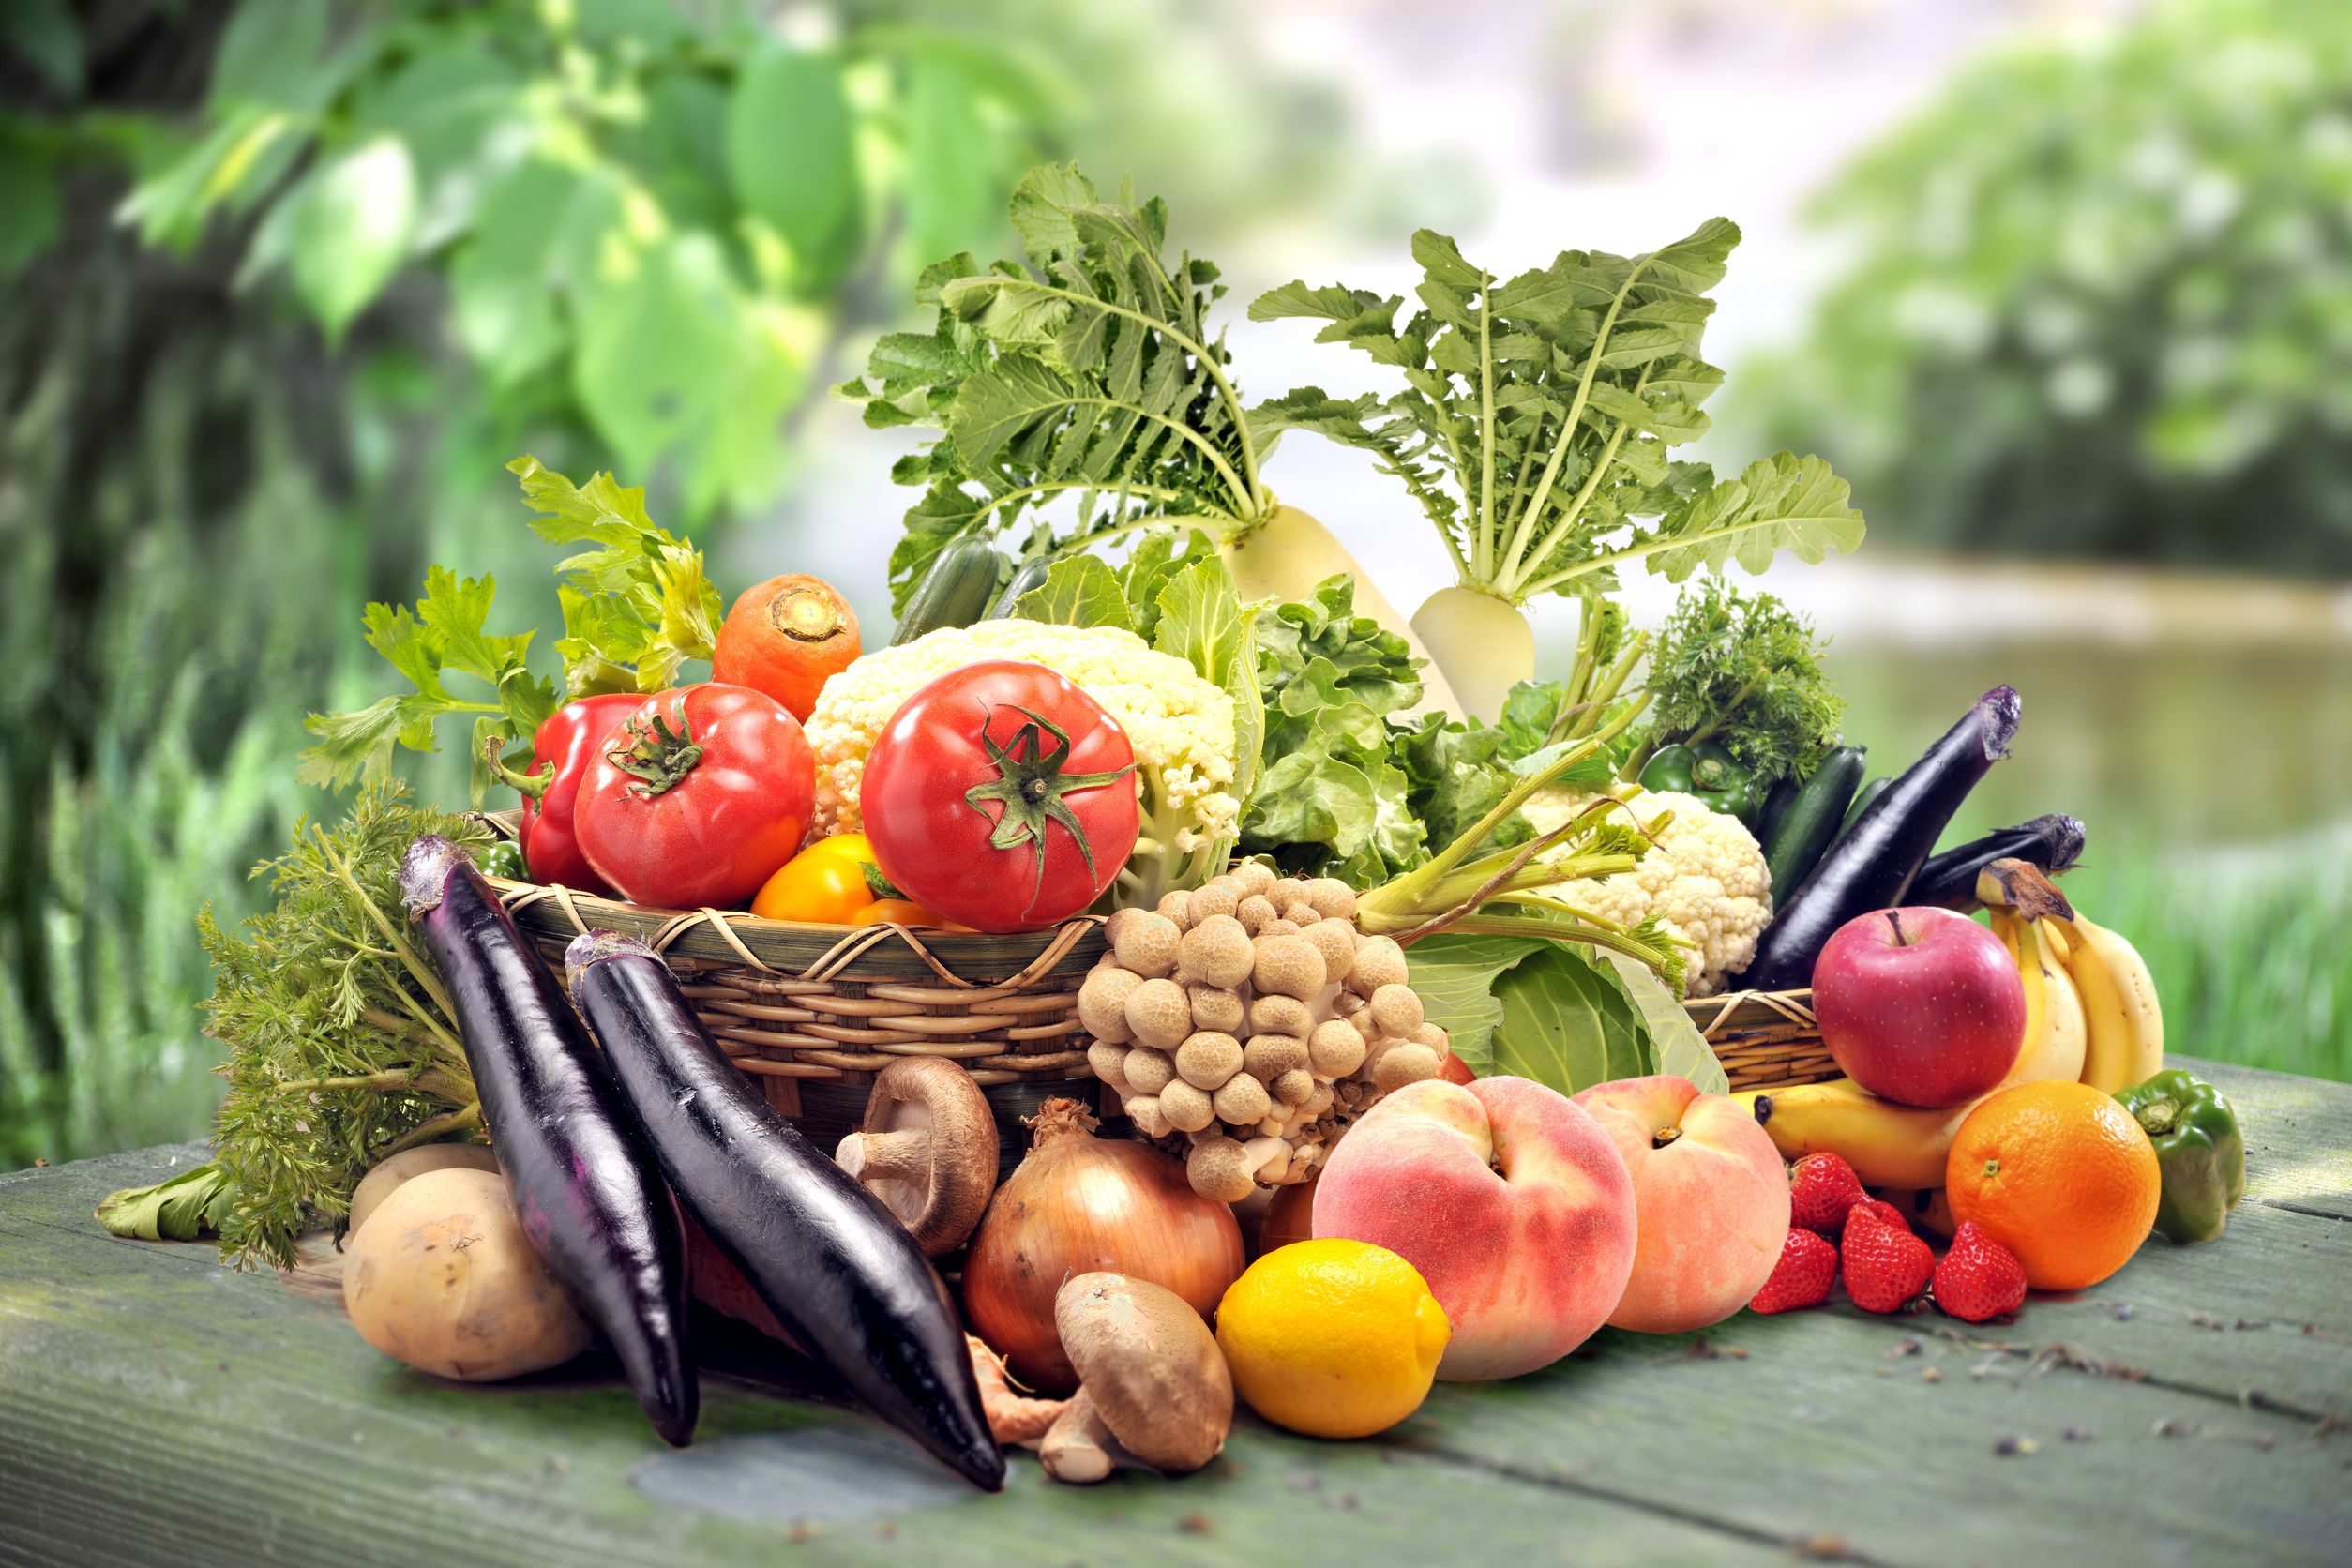 Vegetable products. Овощи и фрукты. Овощи, фрукты, ягоды. Овощи фрукты зелень. Свежие овощи и фрукты.